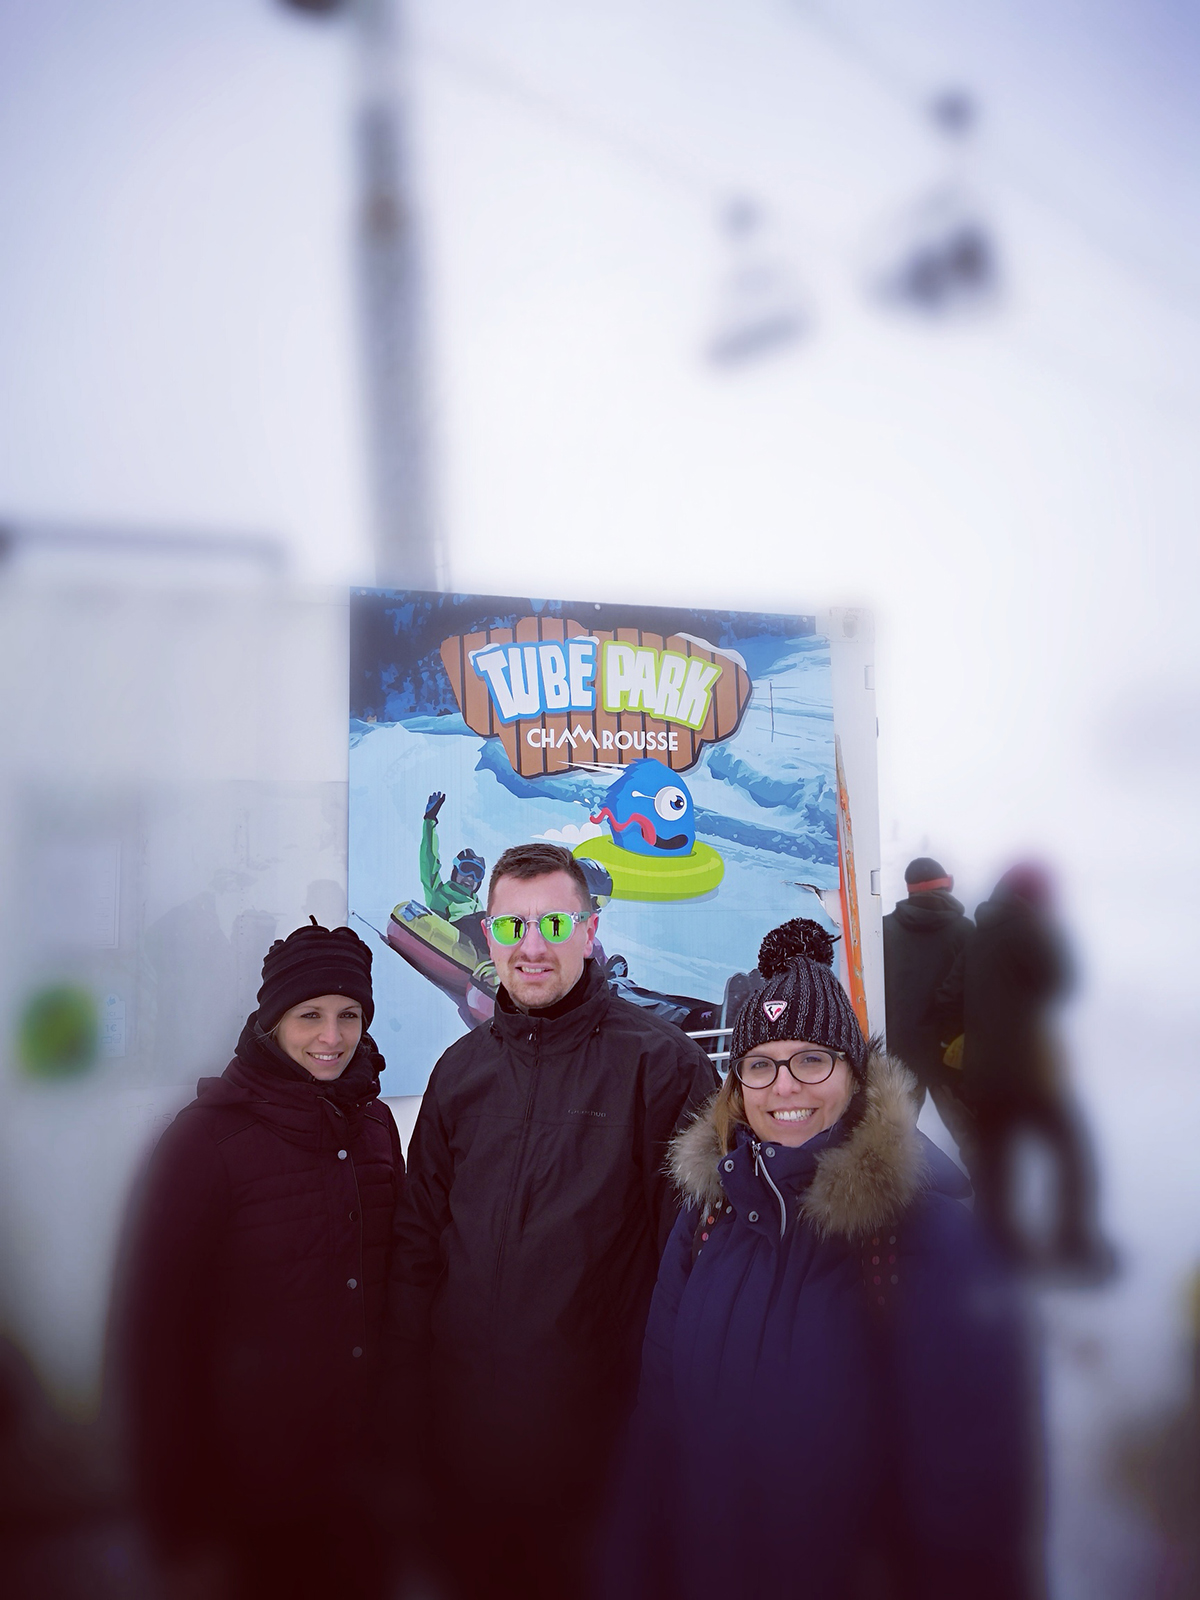 Chamrousse blog experience snowtubing tube park family test mountain ski resort isere french alps france - © EM - OT Chamrousse